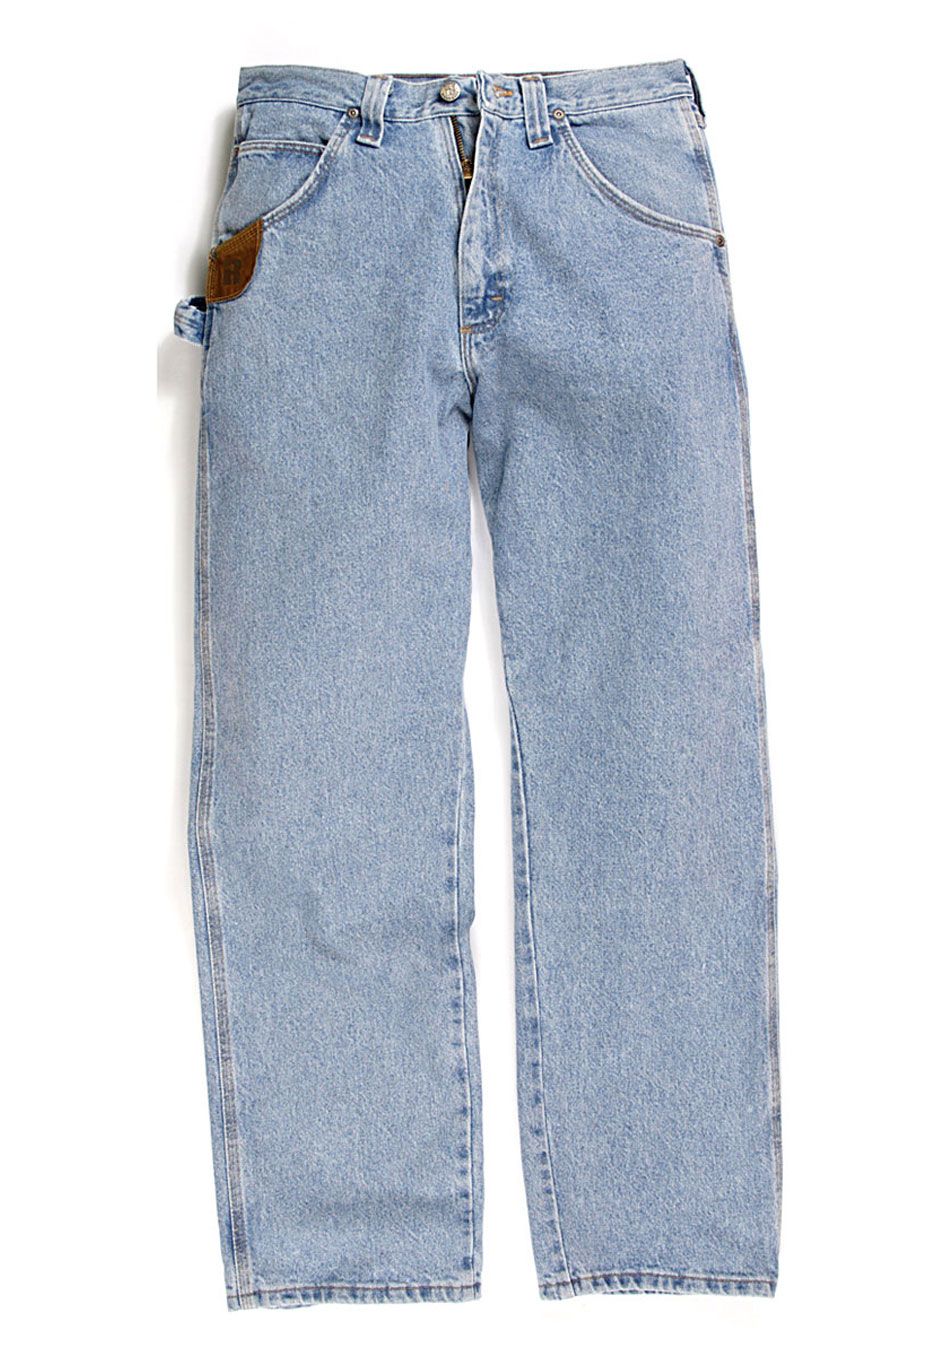 Cordura Denim Work Jeans by Wrangler®, 